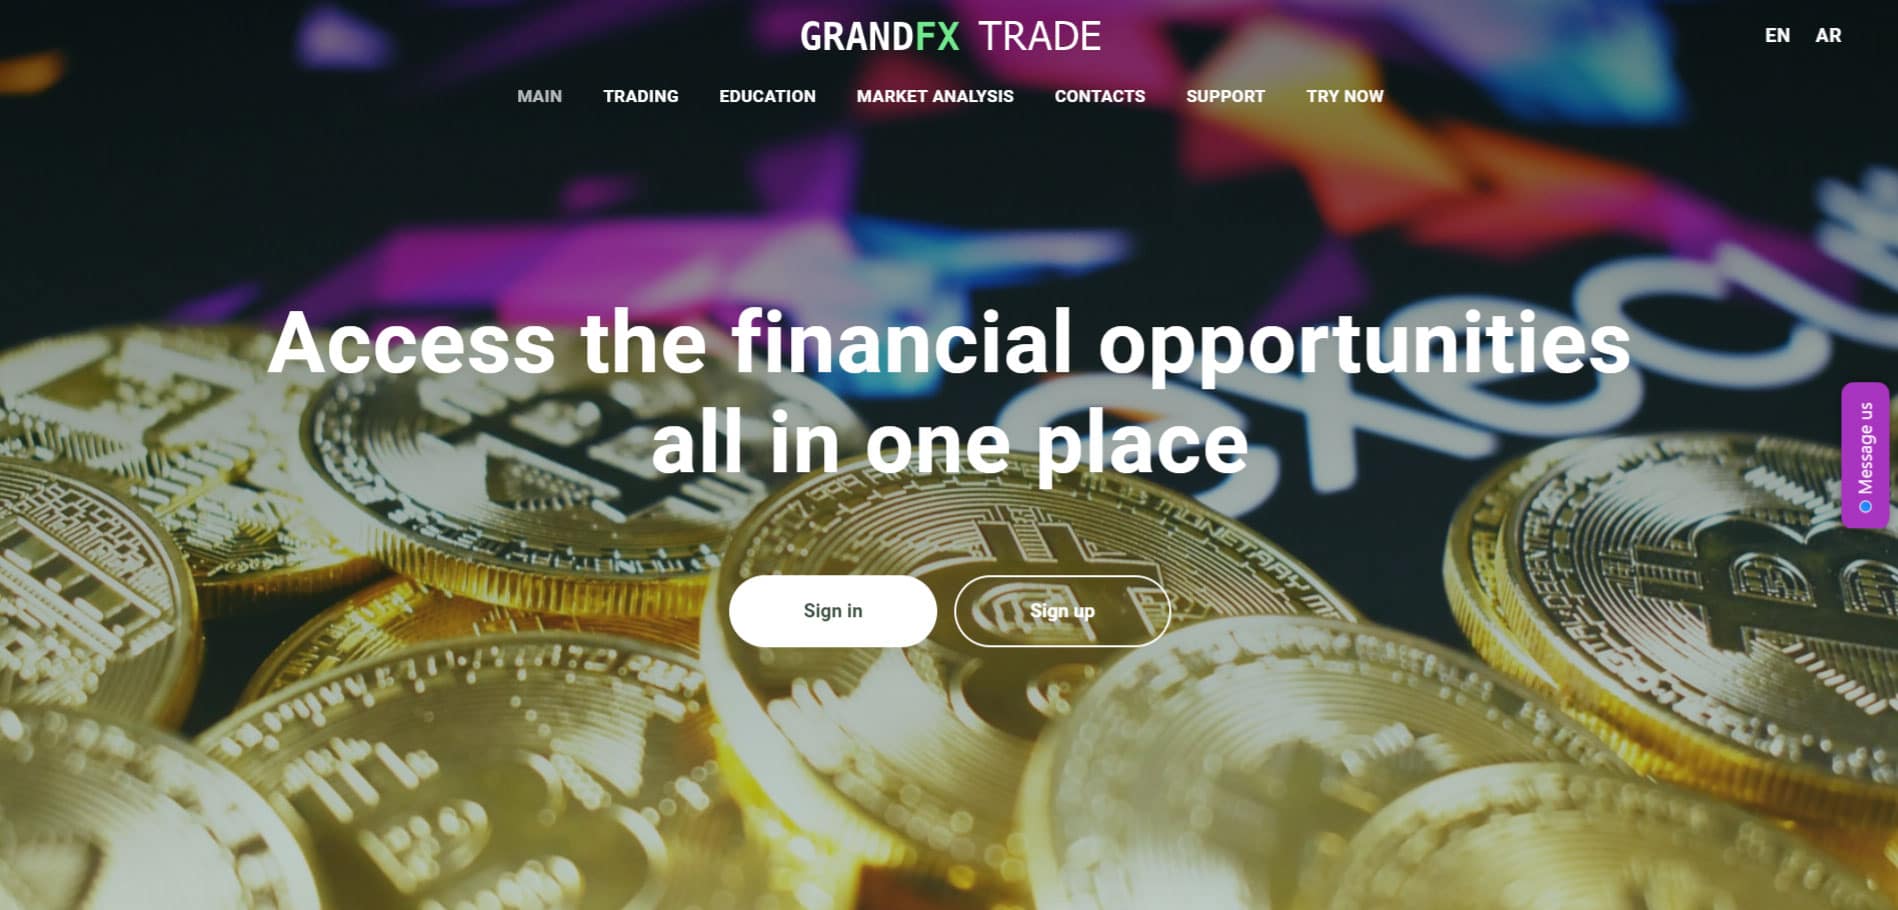 Grandfx-trade.com review